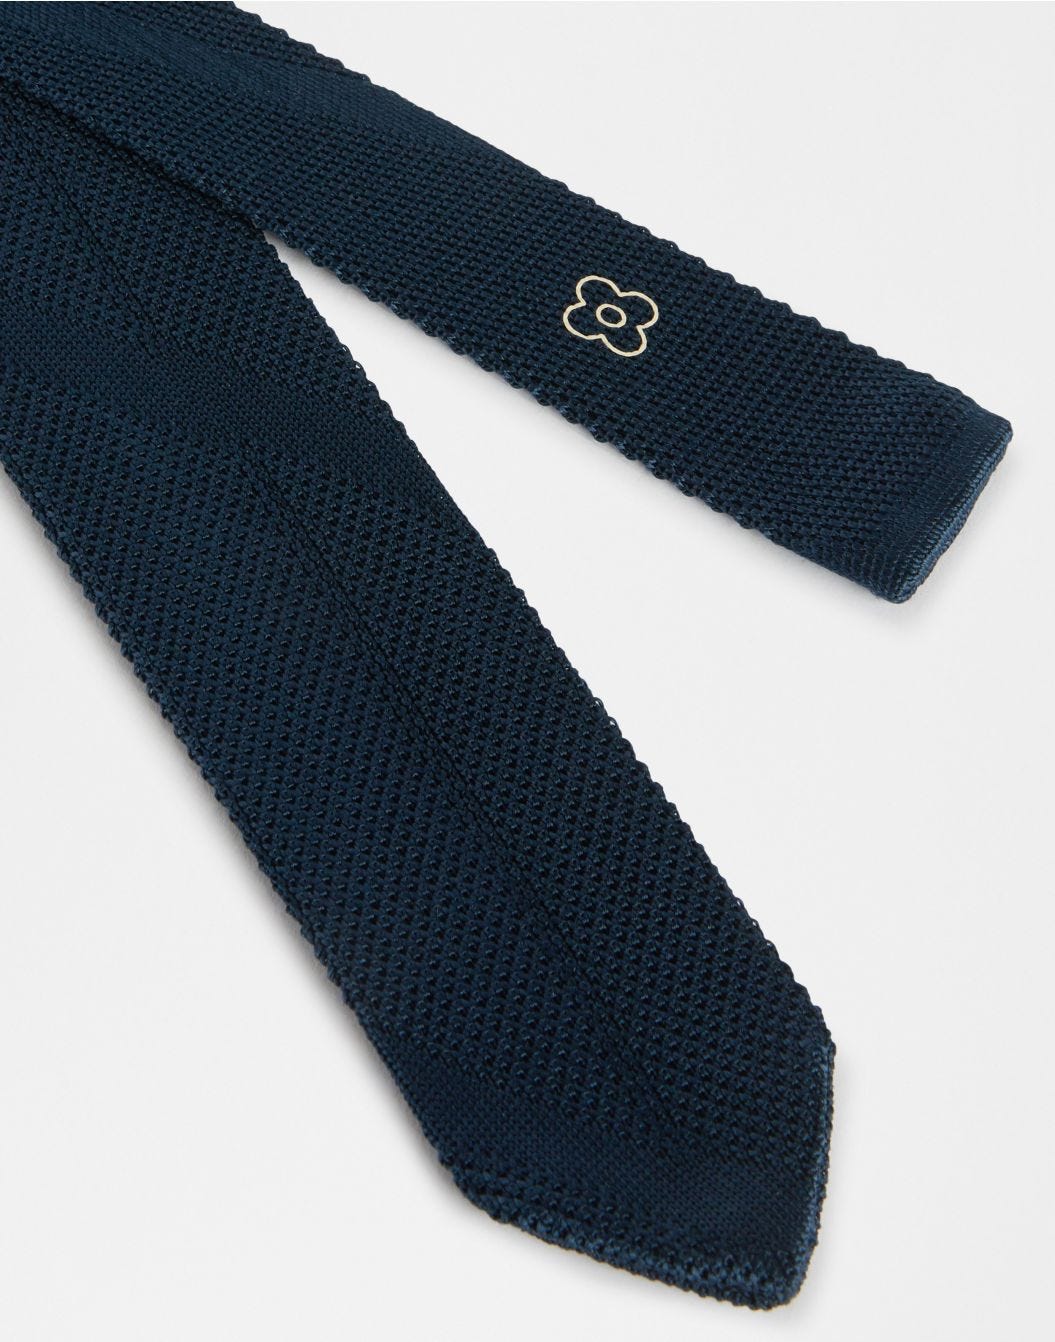 Cravatta nera tricot in seta  